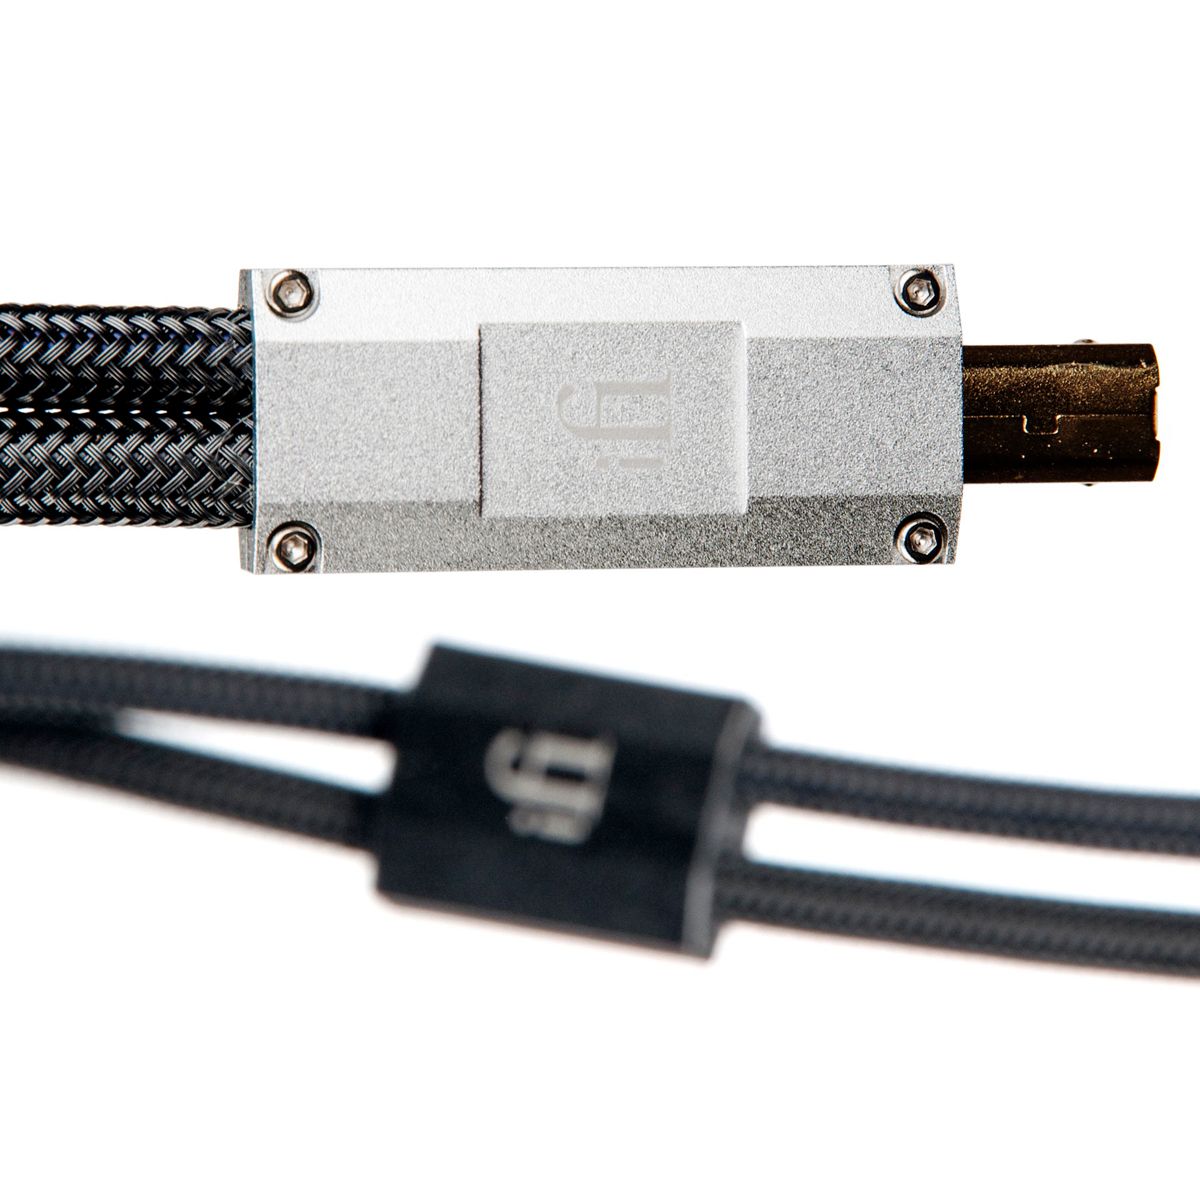 Gemini Dual Headed Audiophile USB Cable - 0.7m